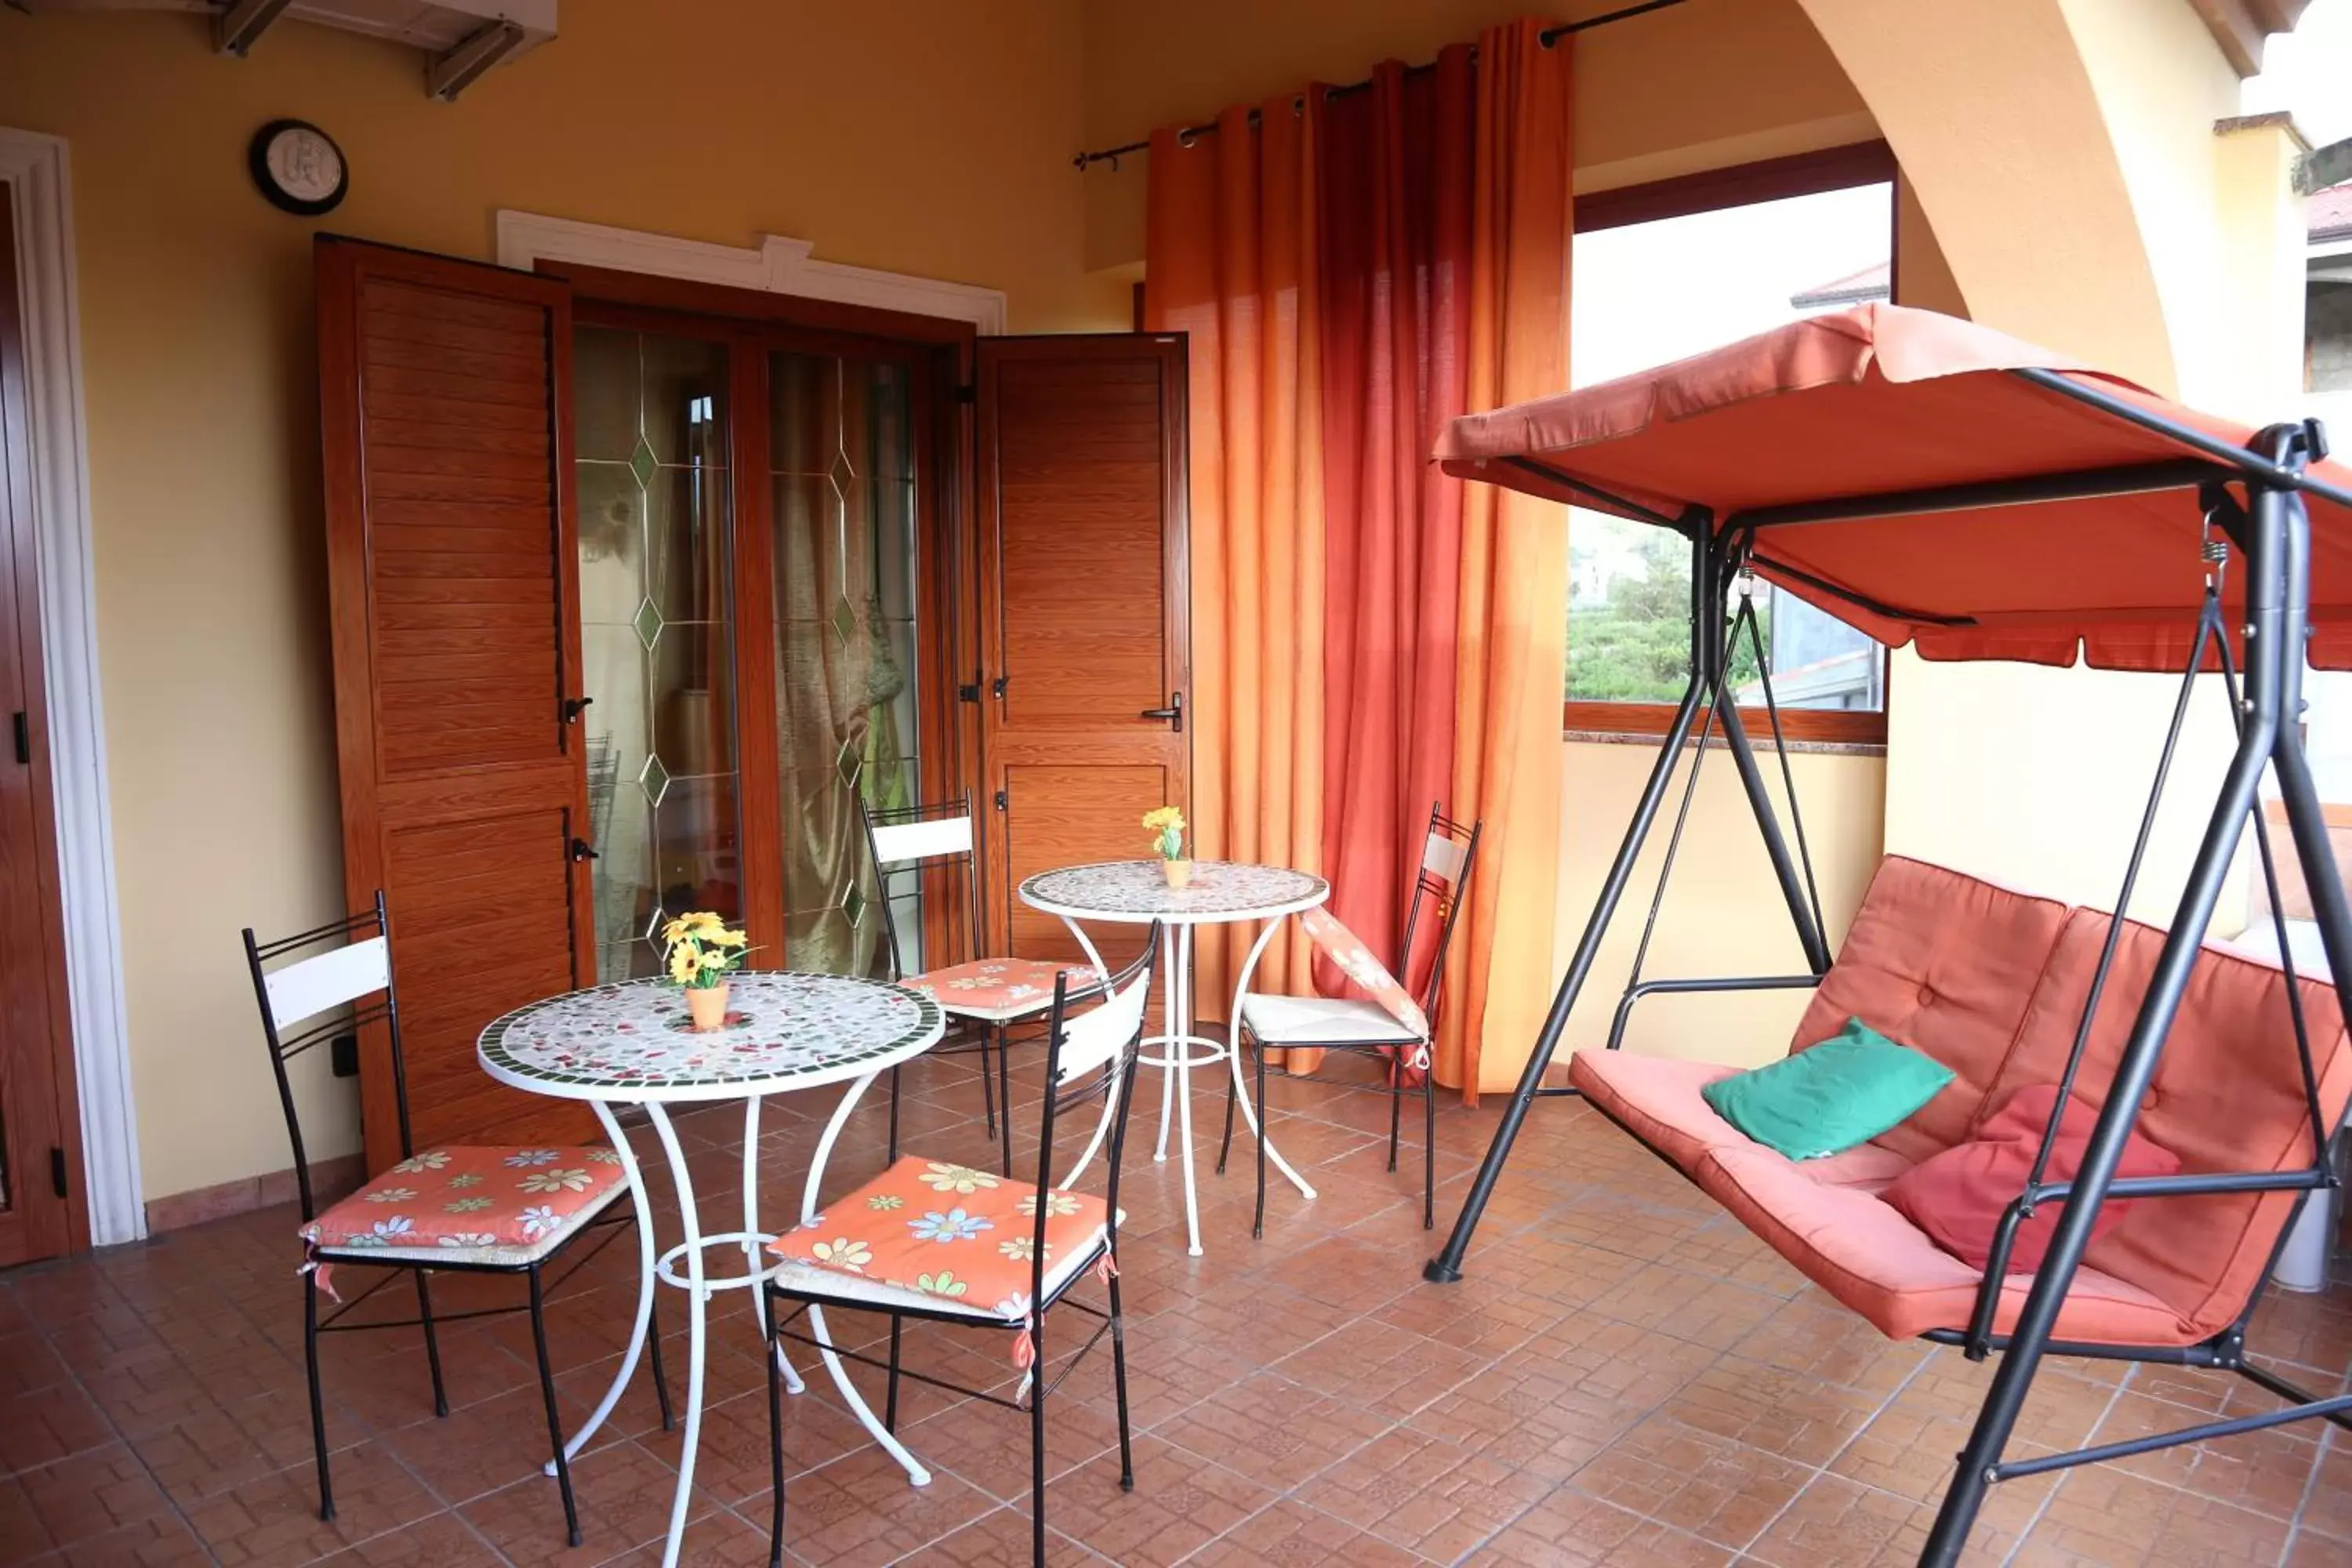 Balcony/Terrace, Patio/Outdoor Area in Villa Manno